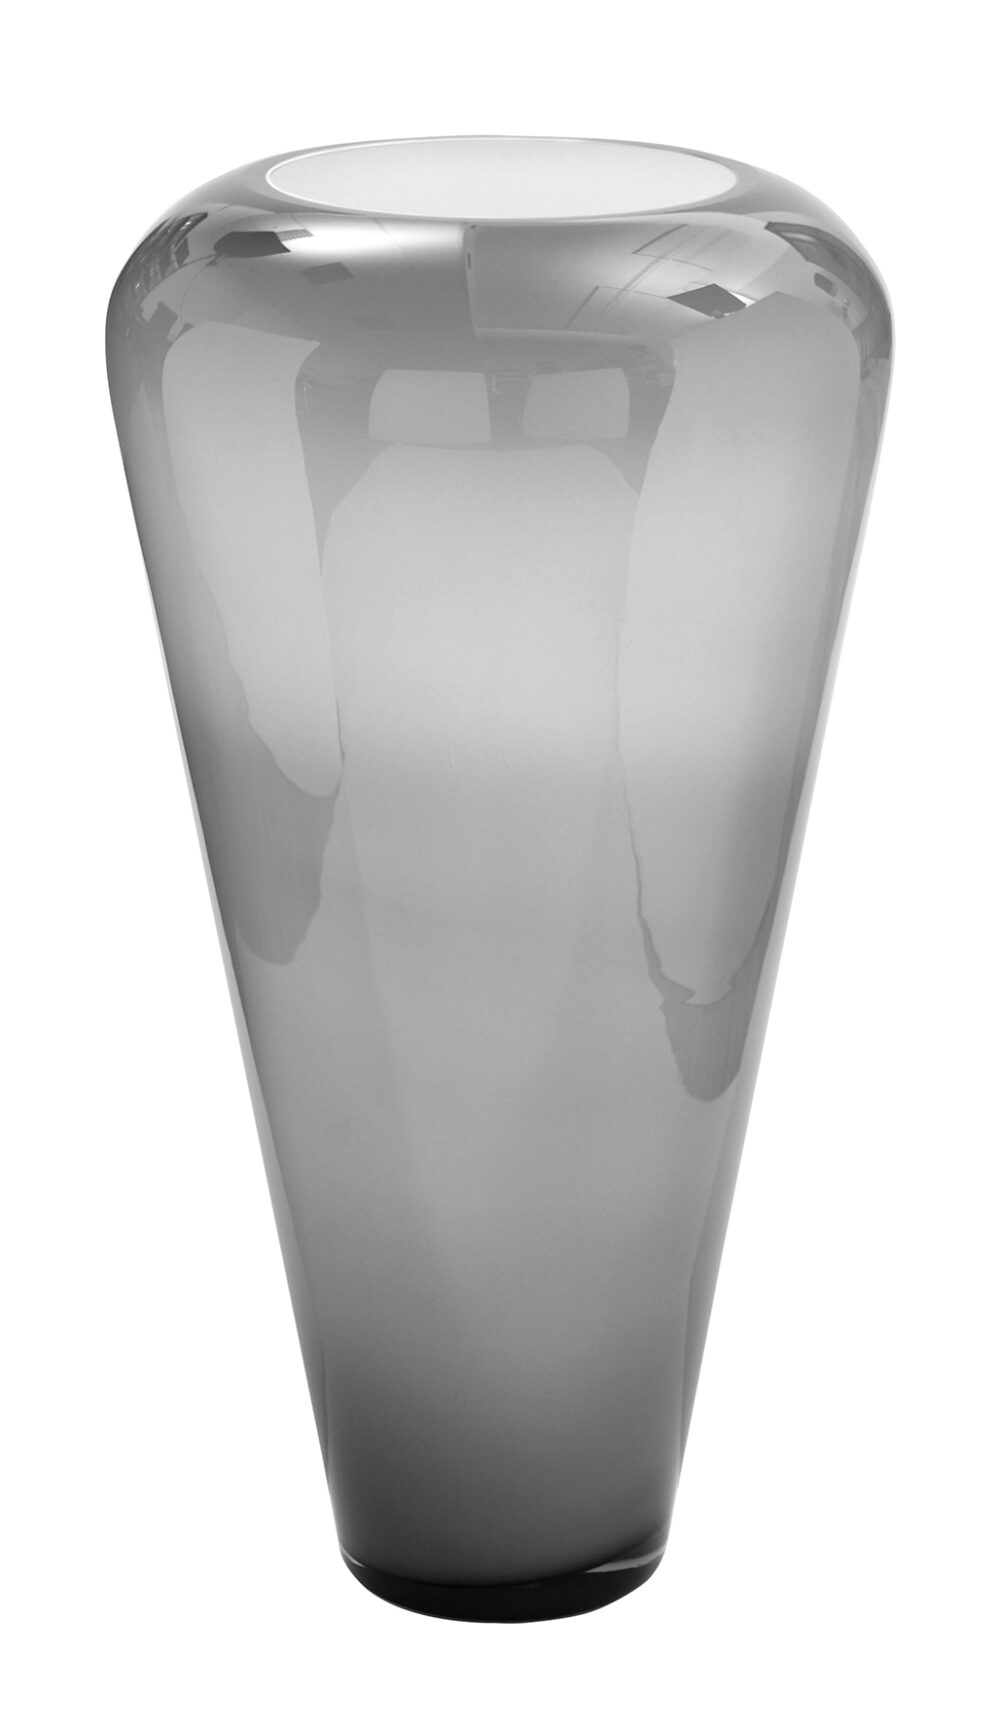 115304 Fink Bodenvase Glasvase Vase Glas Dekovase groß Venus grau opal